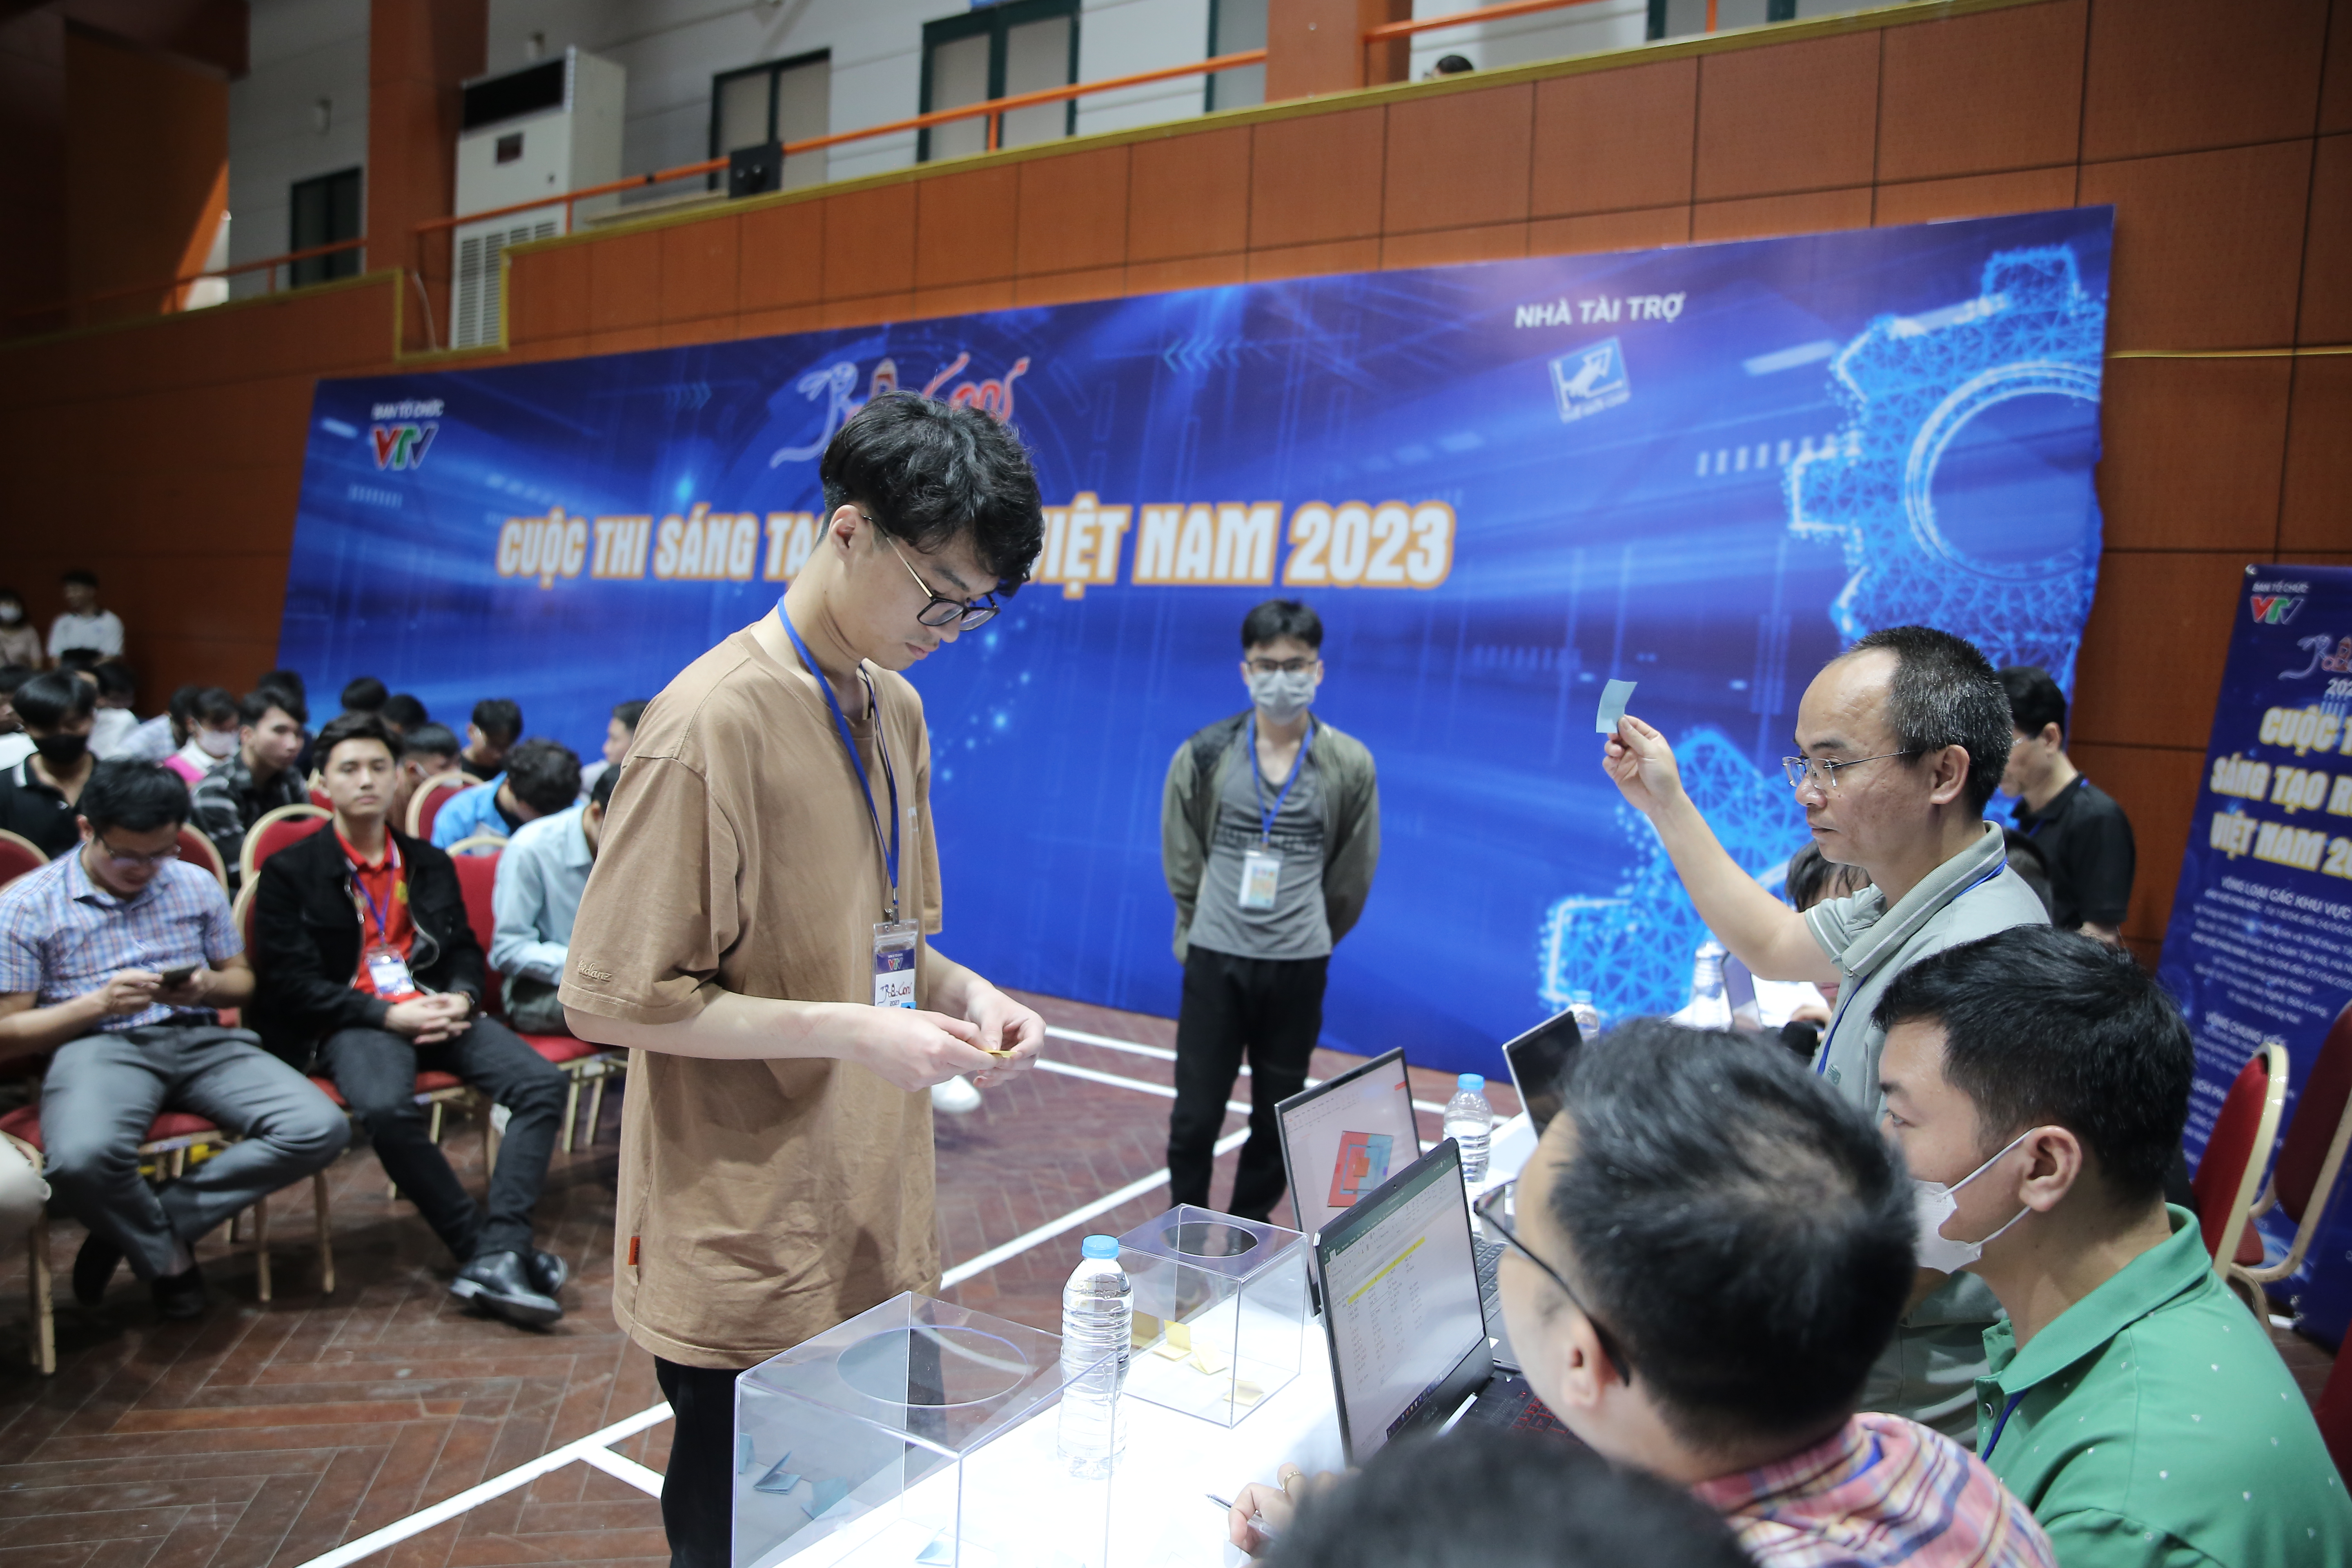 Robocon Việt Nam 2023: Kết quả bốc thăm chia bảng vòng loại khu vực phía Bắc